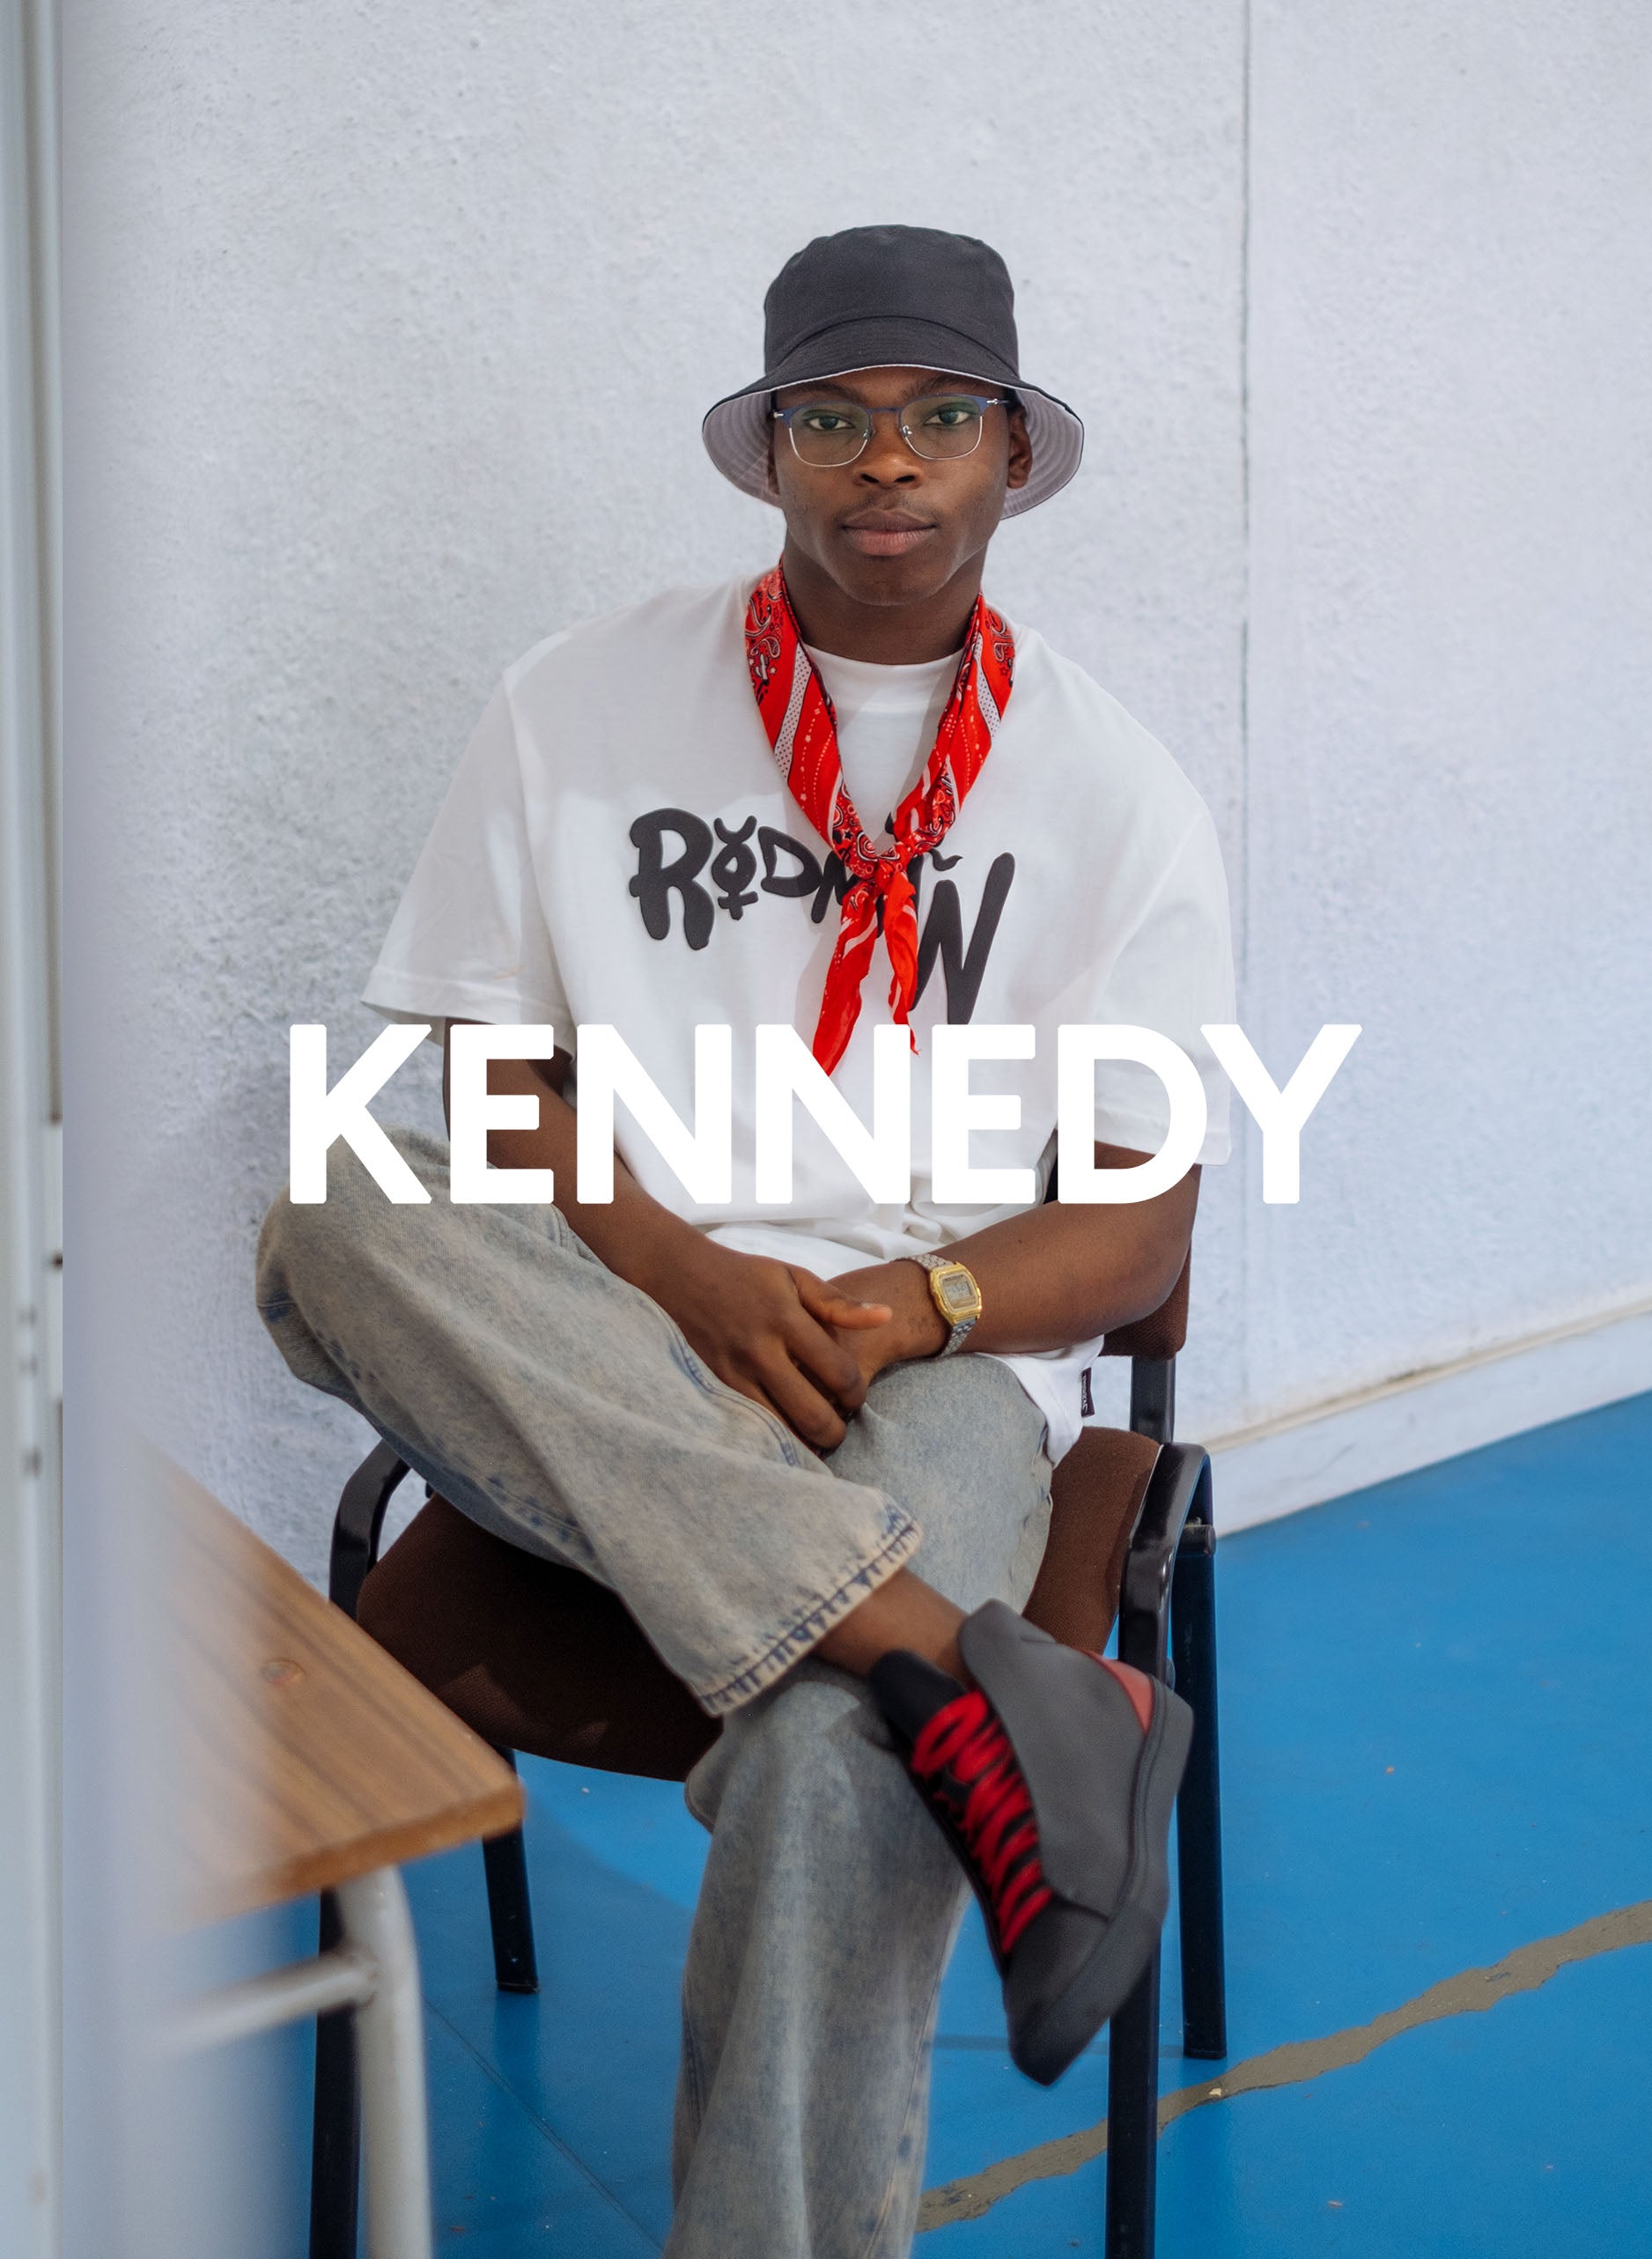 Kennedy seduto su una sedia, con Diverge sneakers, che mette in mostra l'impatto sociale e le scarpe personalizzate attraverso il progetto Imagine.